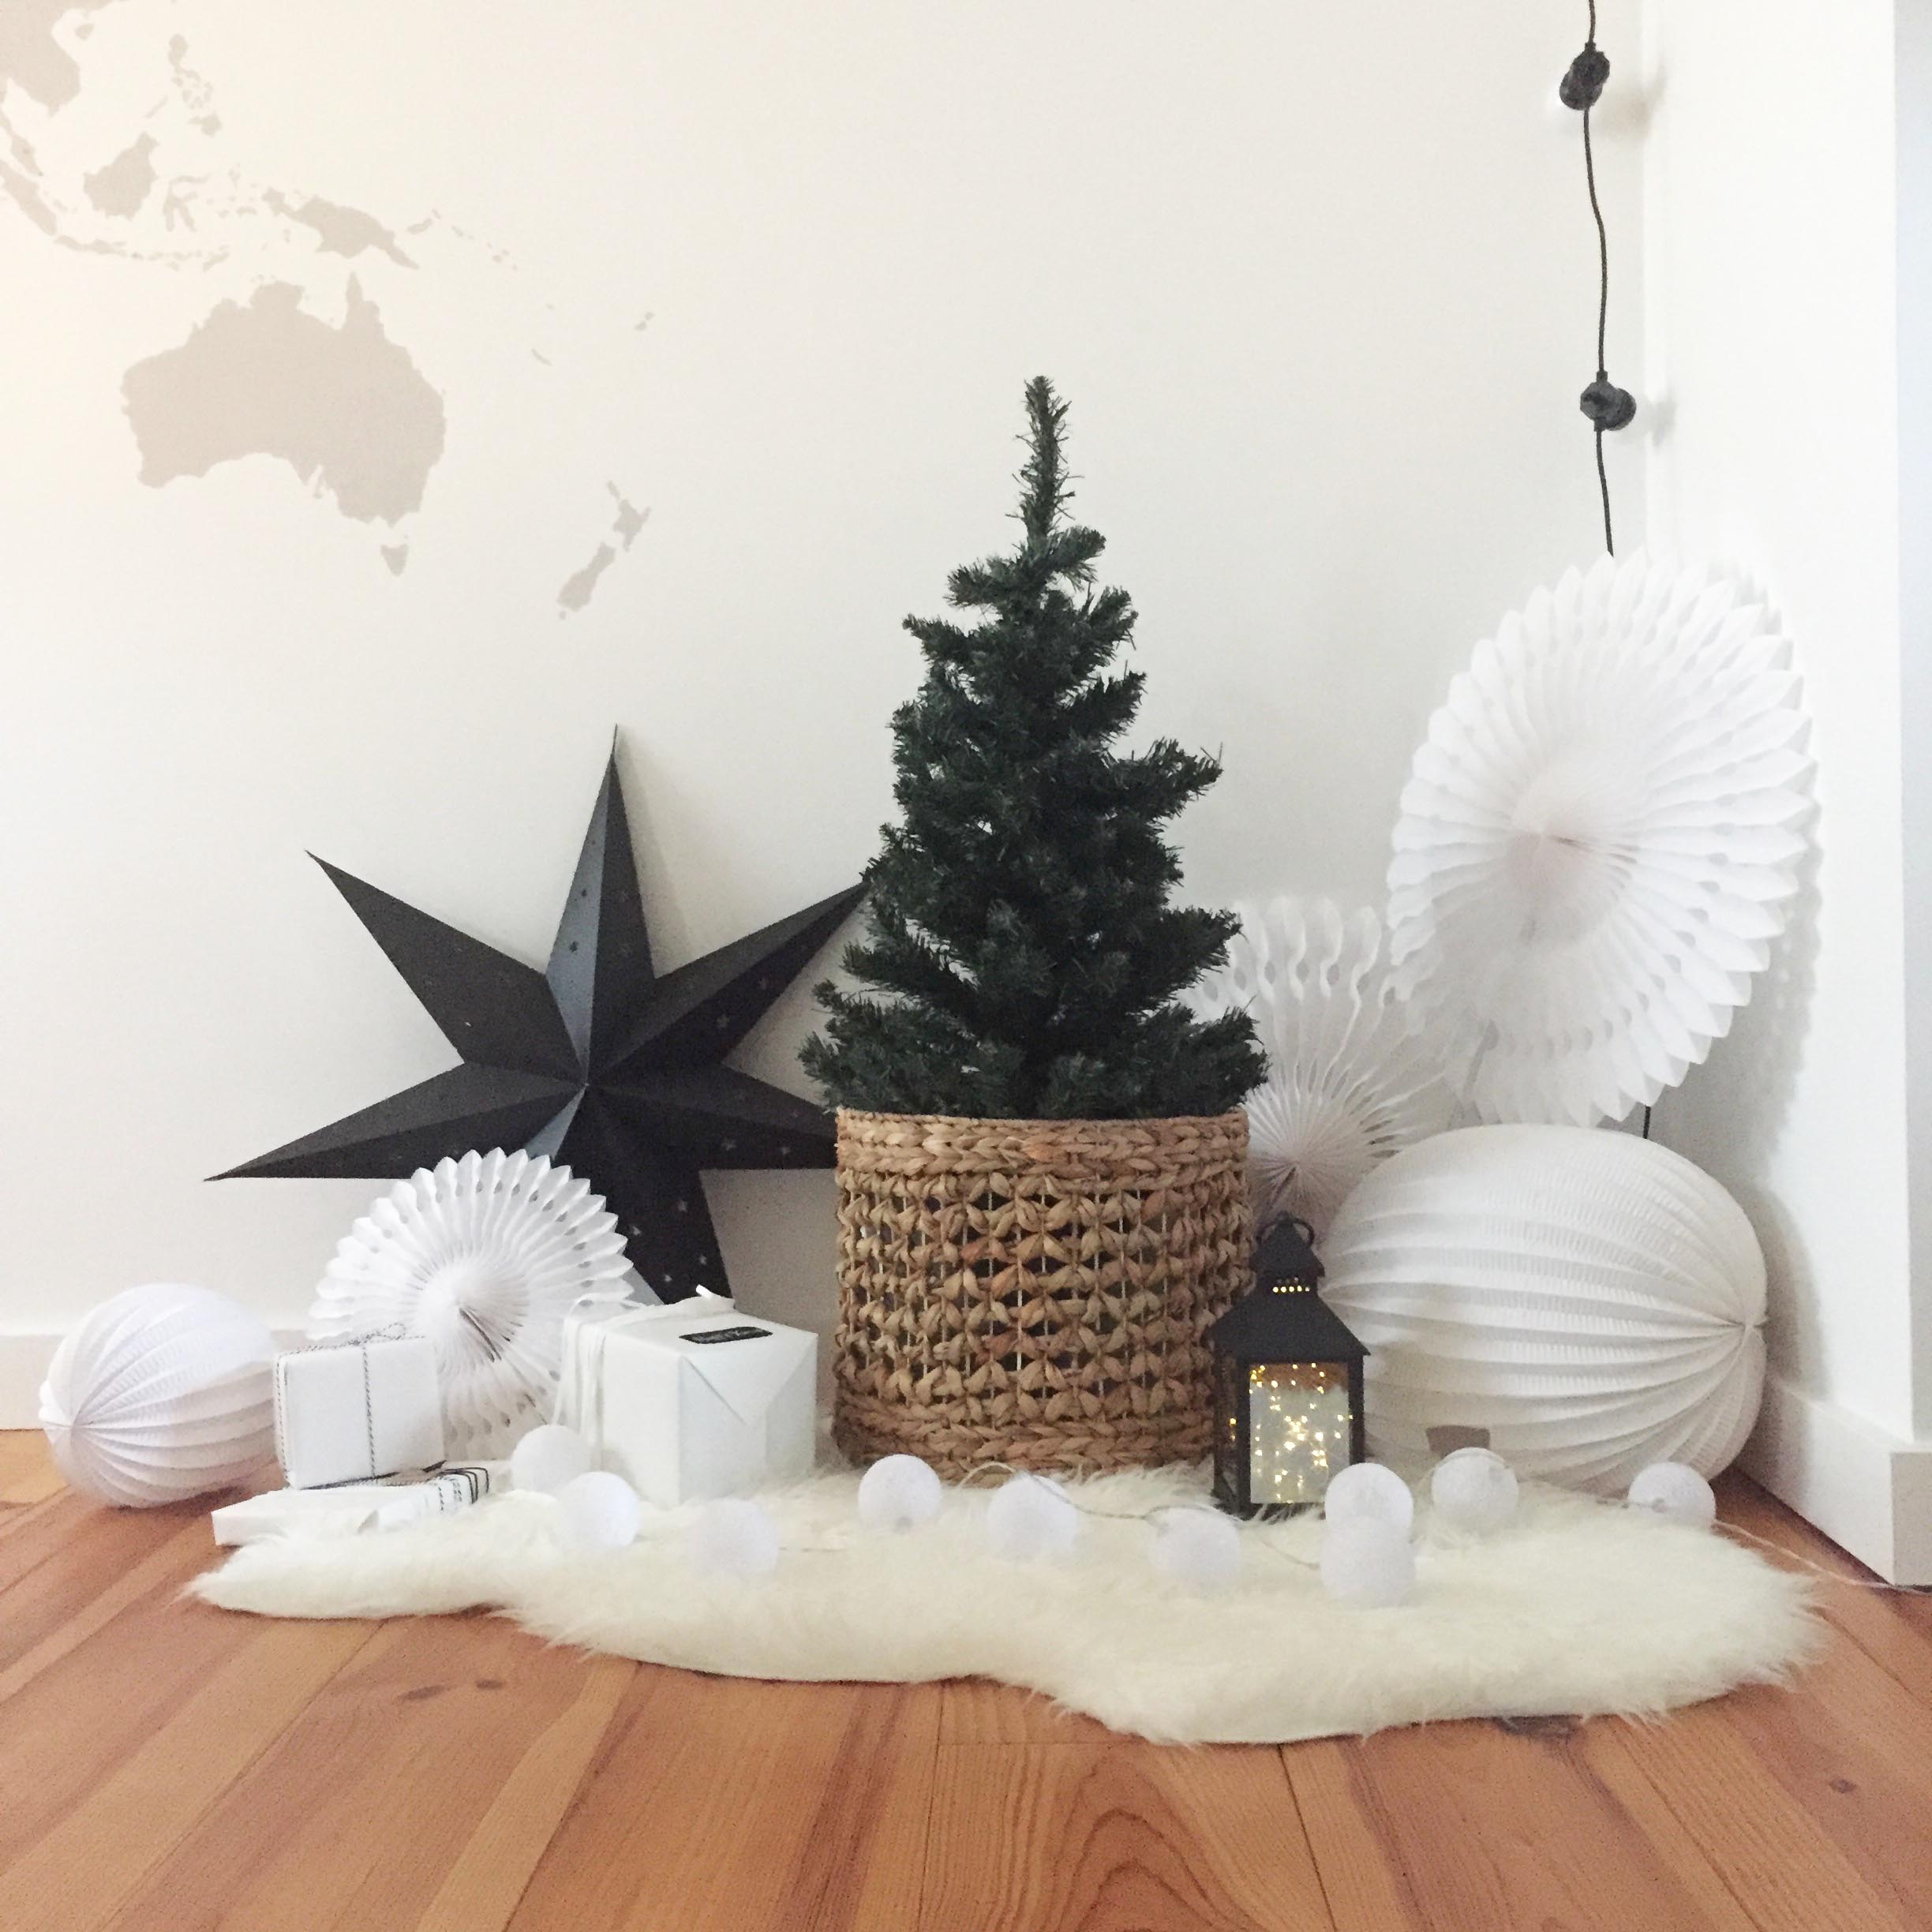 DIY Noël : Découper un renne rigolo en papier - Idées conseils et